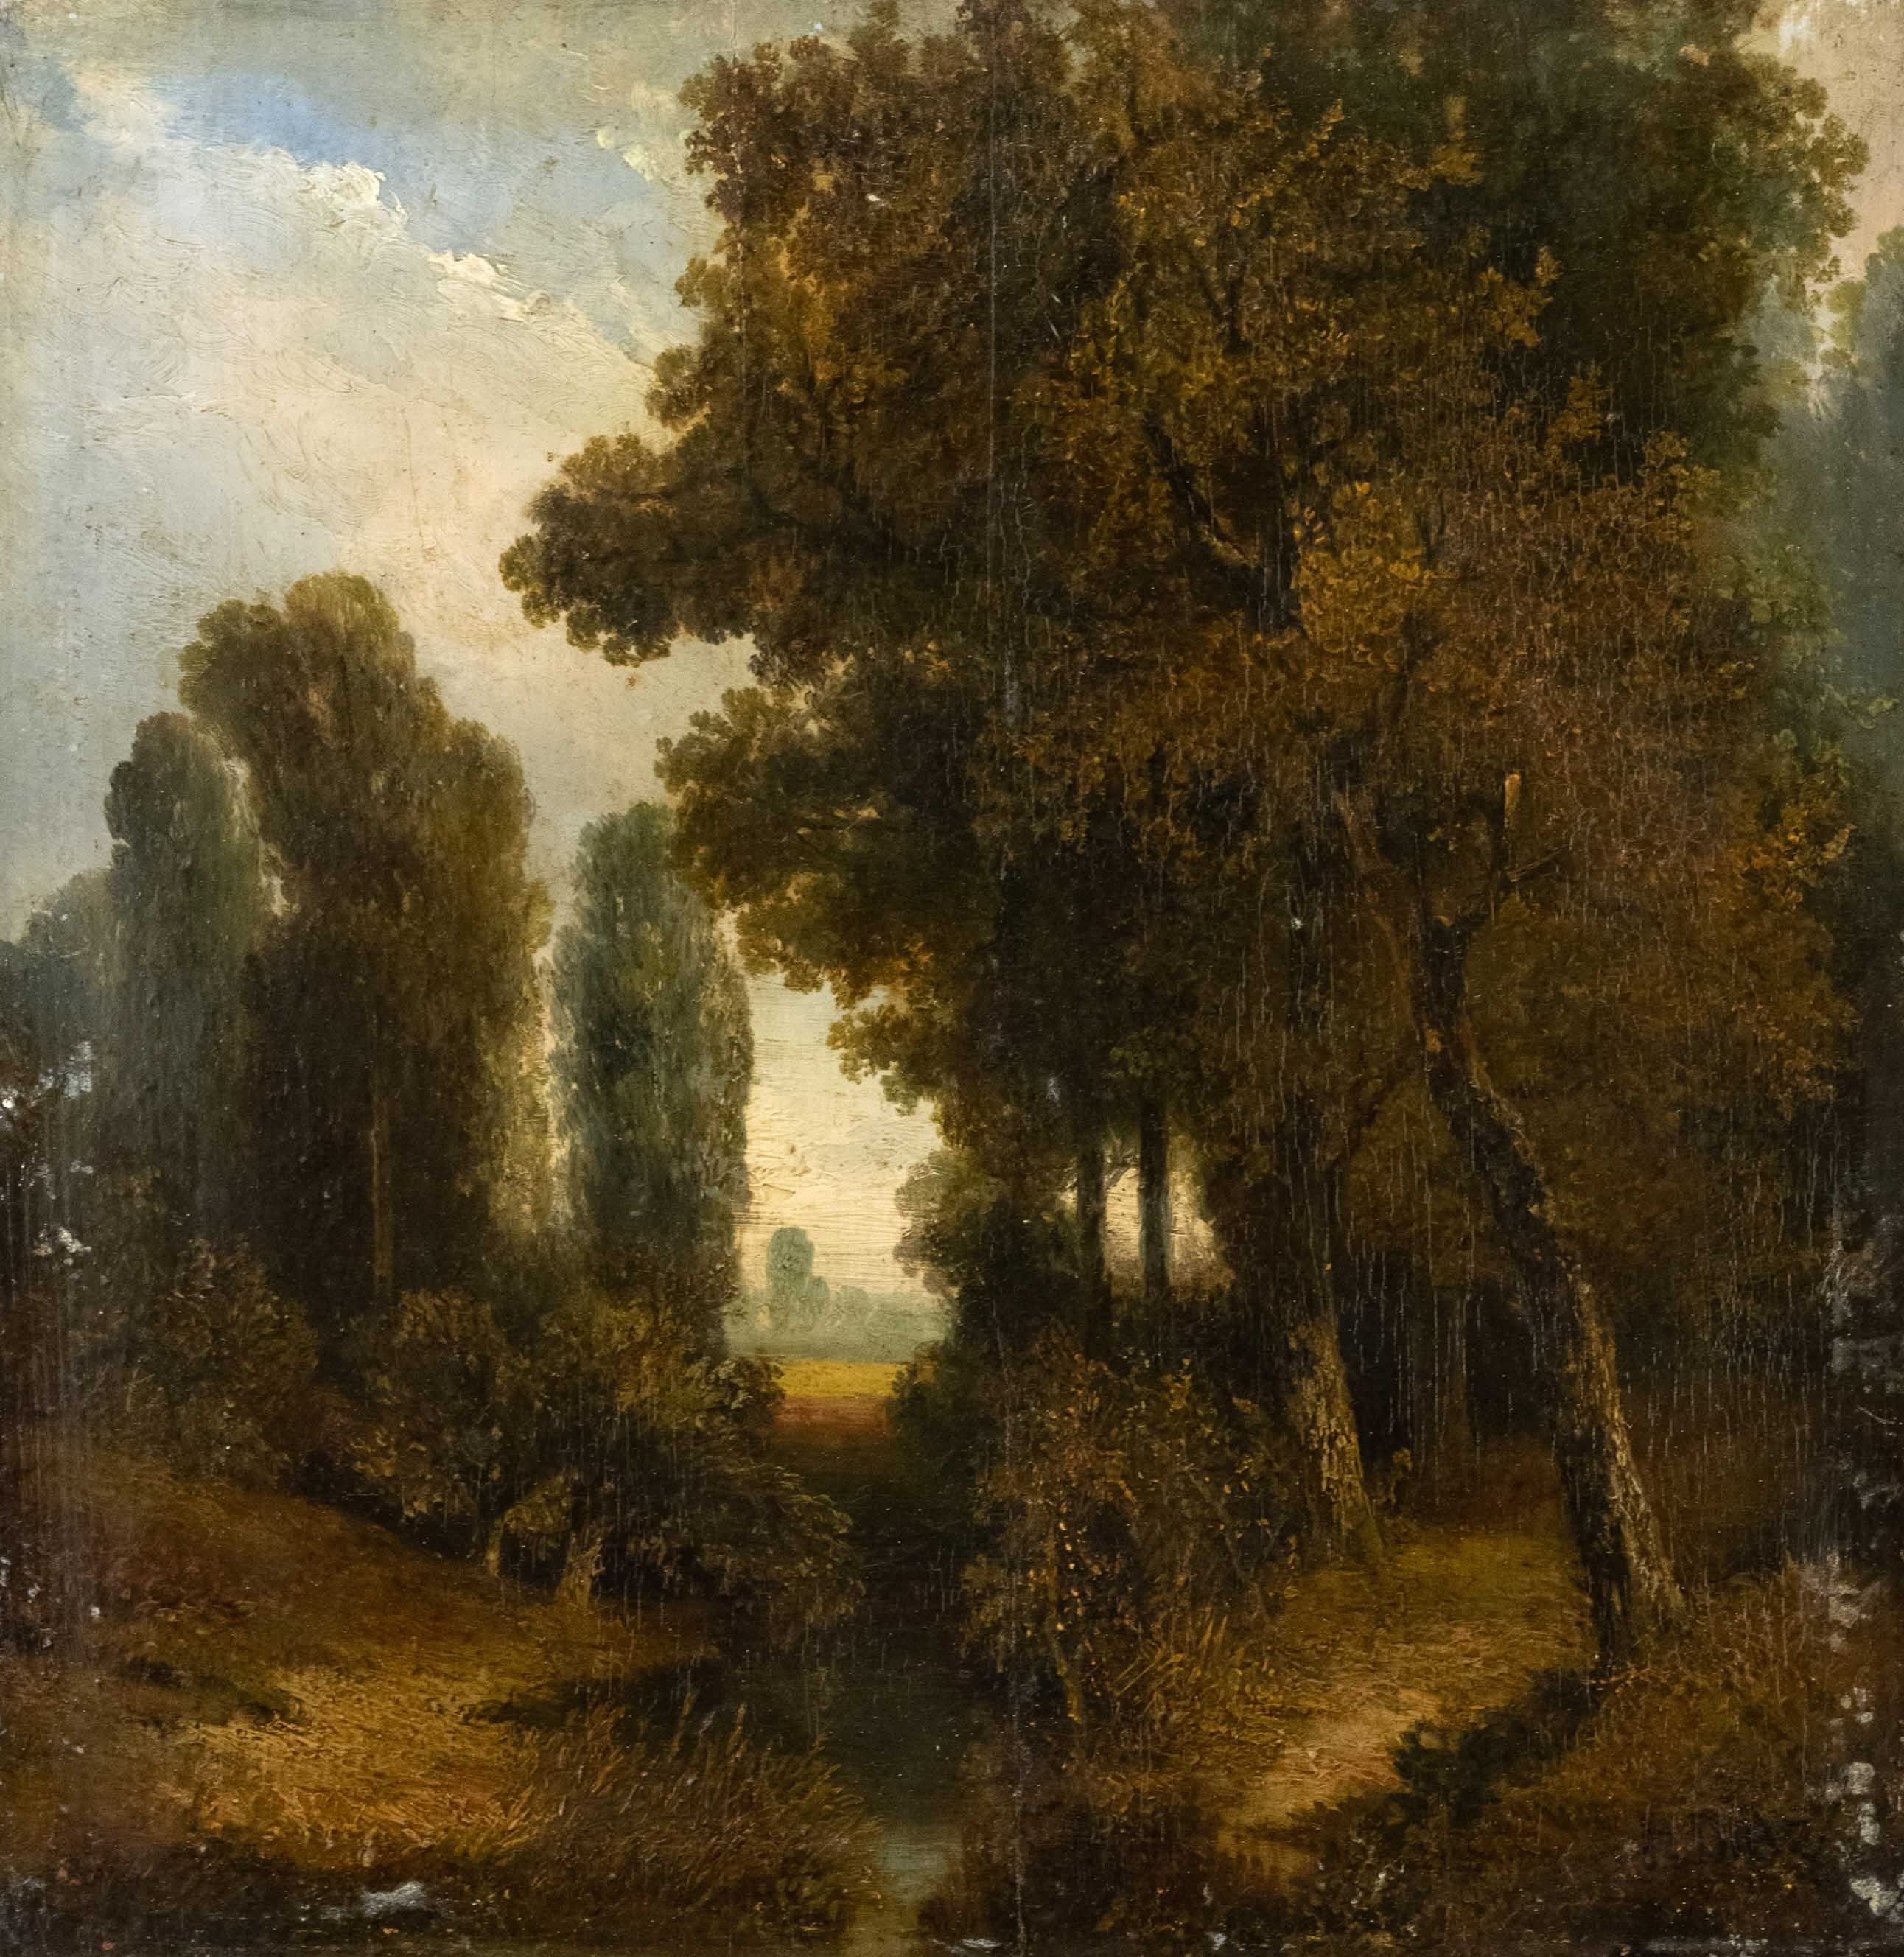 Diaz de la Peña, Narcisse Virgile. 1807 Bordeaux - 1876 Menton. Tree-lined landscape with stream.